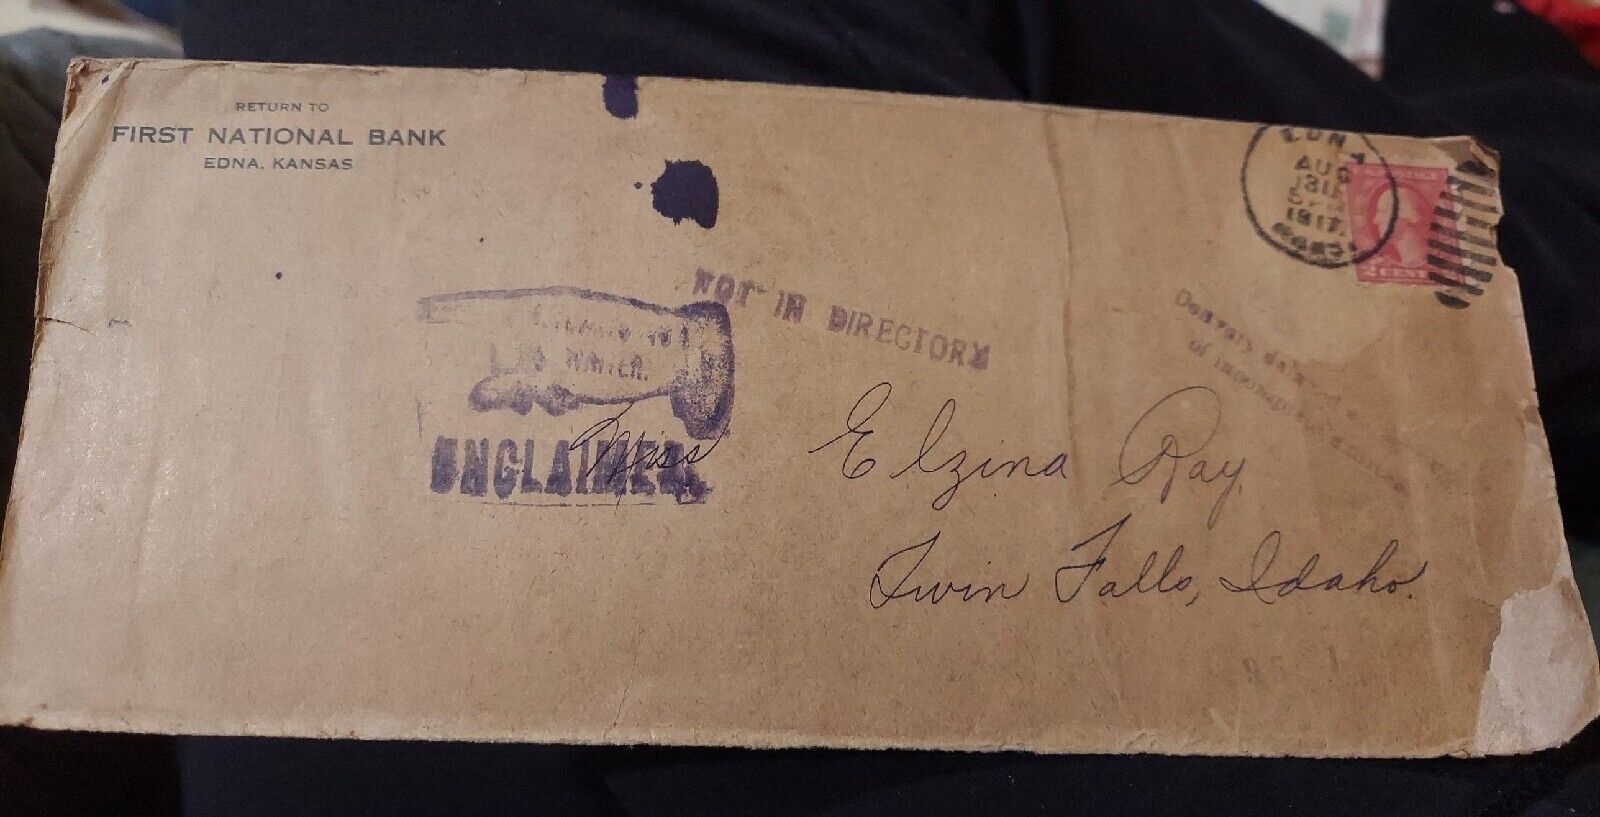 EDNA KANSAS FIRST NATIONAL BANK envelope with ledger inside flap 1917